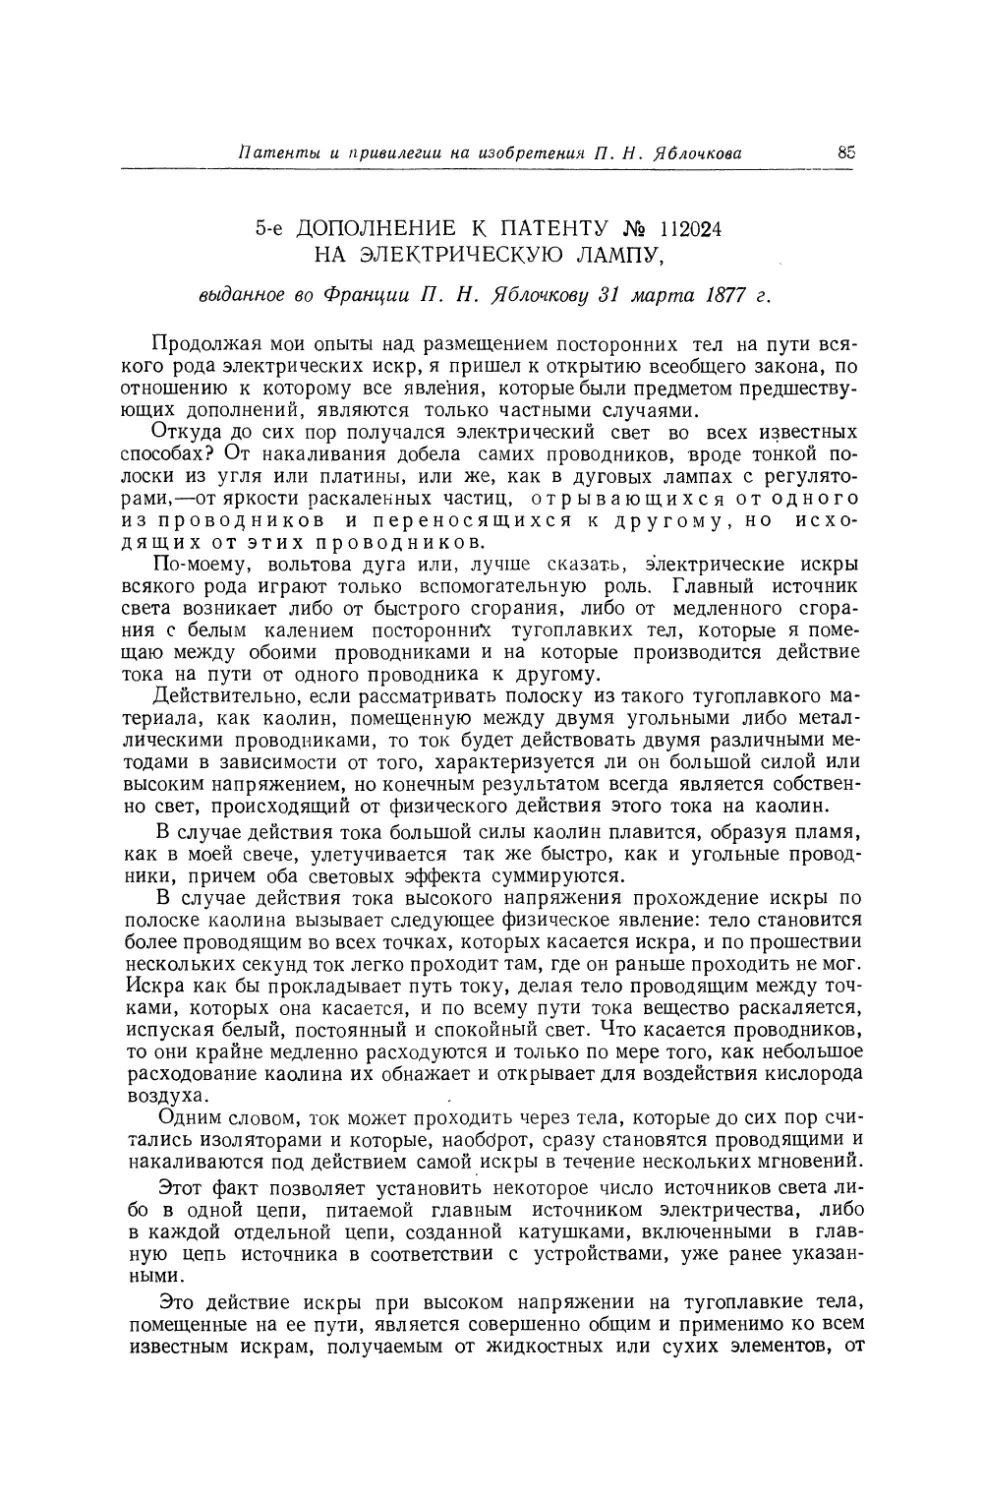 5-е дополнение к патенту № 112024 на электрическую лампу, выданное во Франции П. Н. Яблочкову 31 марта 1877 г